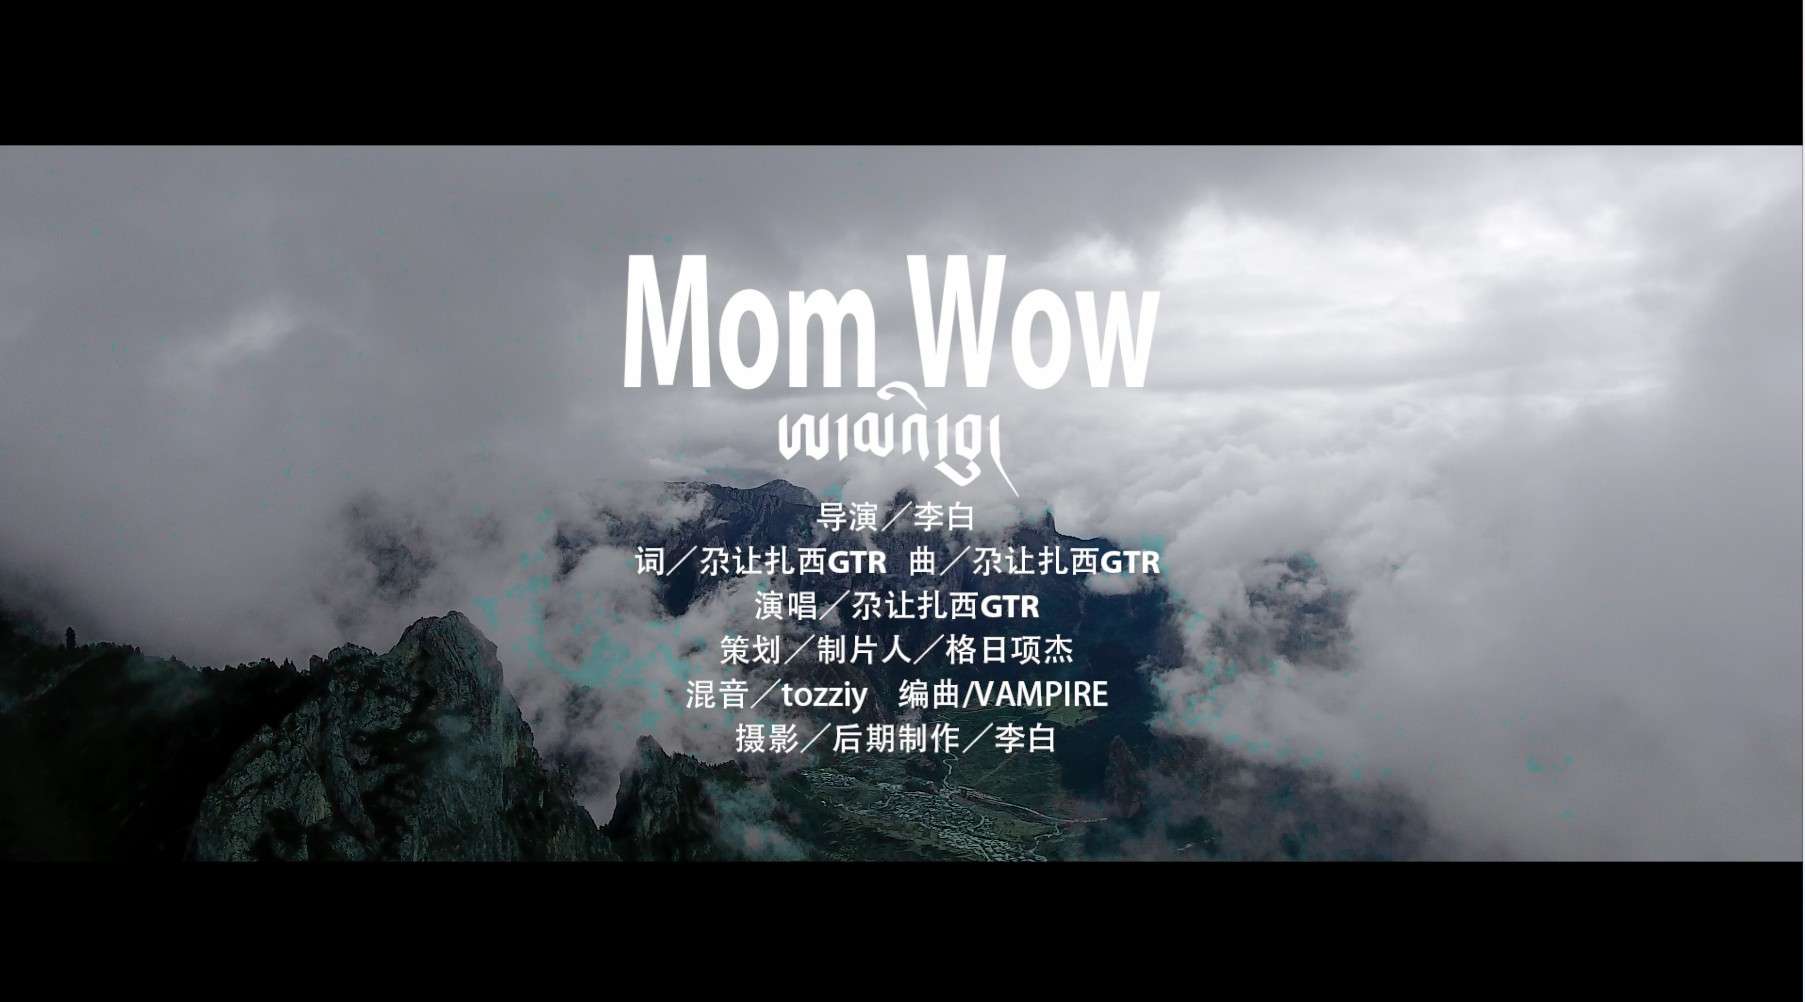 Mom Wom